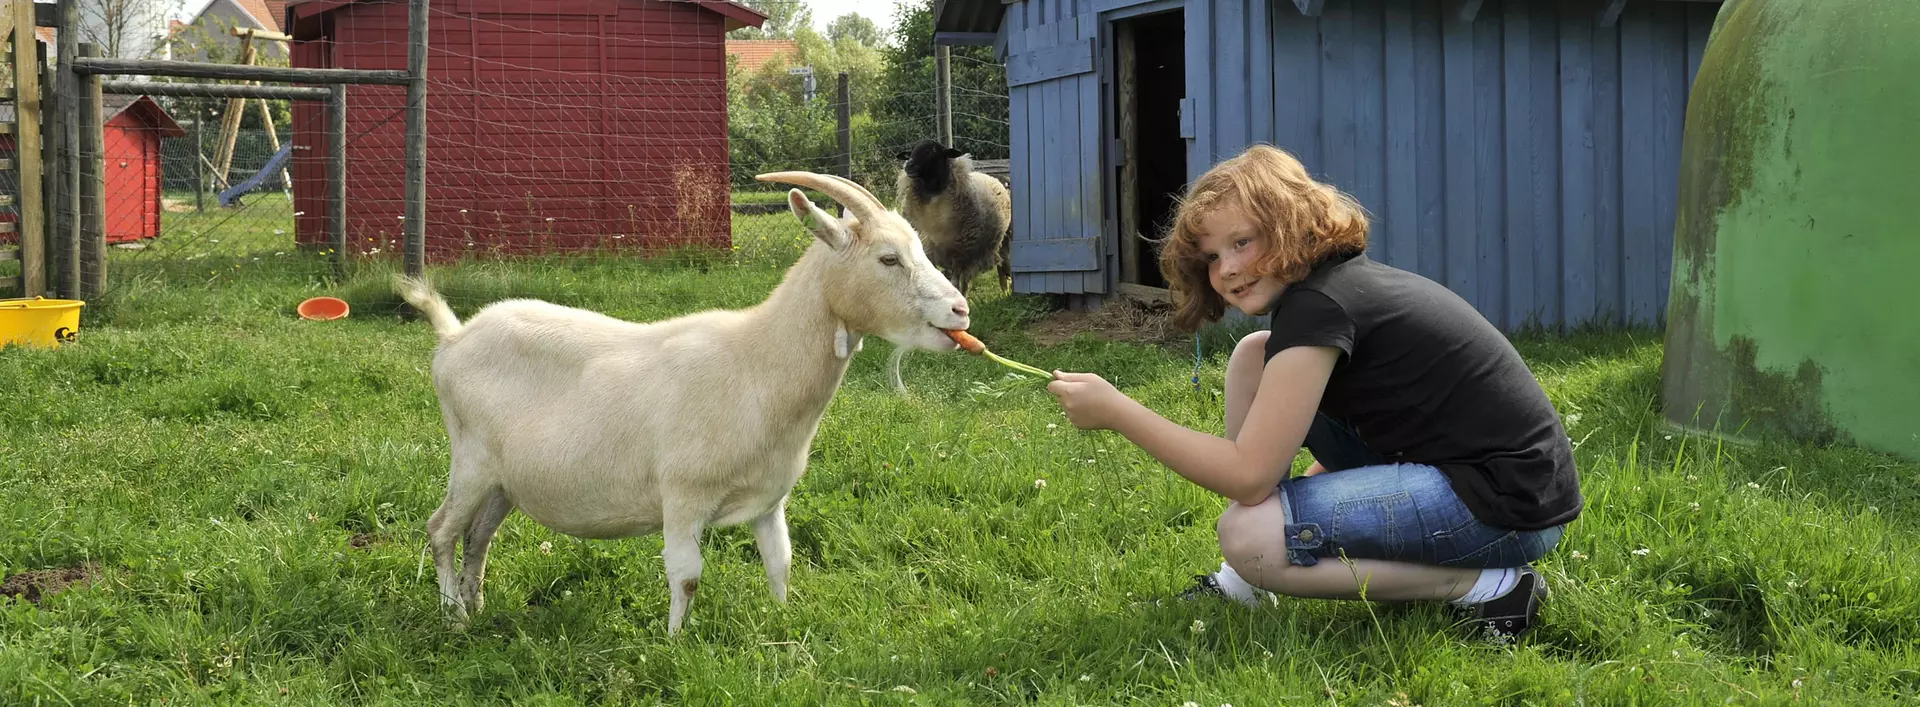 Bei einem Urlaub auf dem Bauernhof können Kinder Tiere streicheln und füttern.